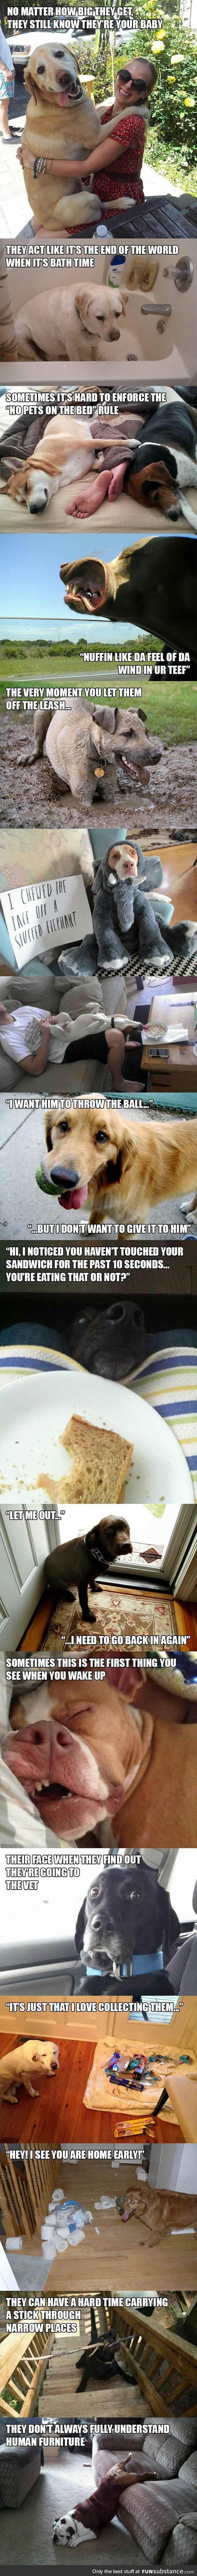 Dog logic at its best